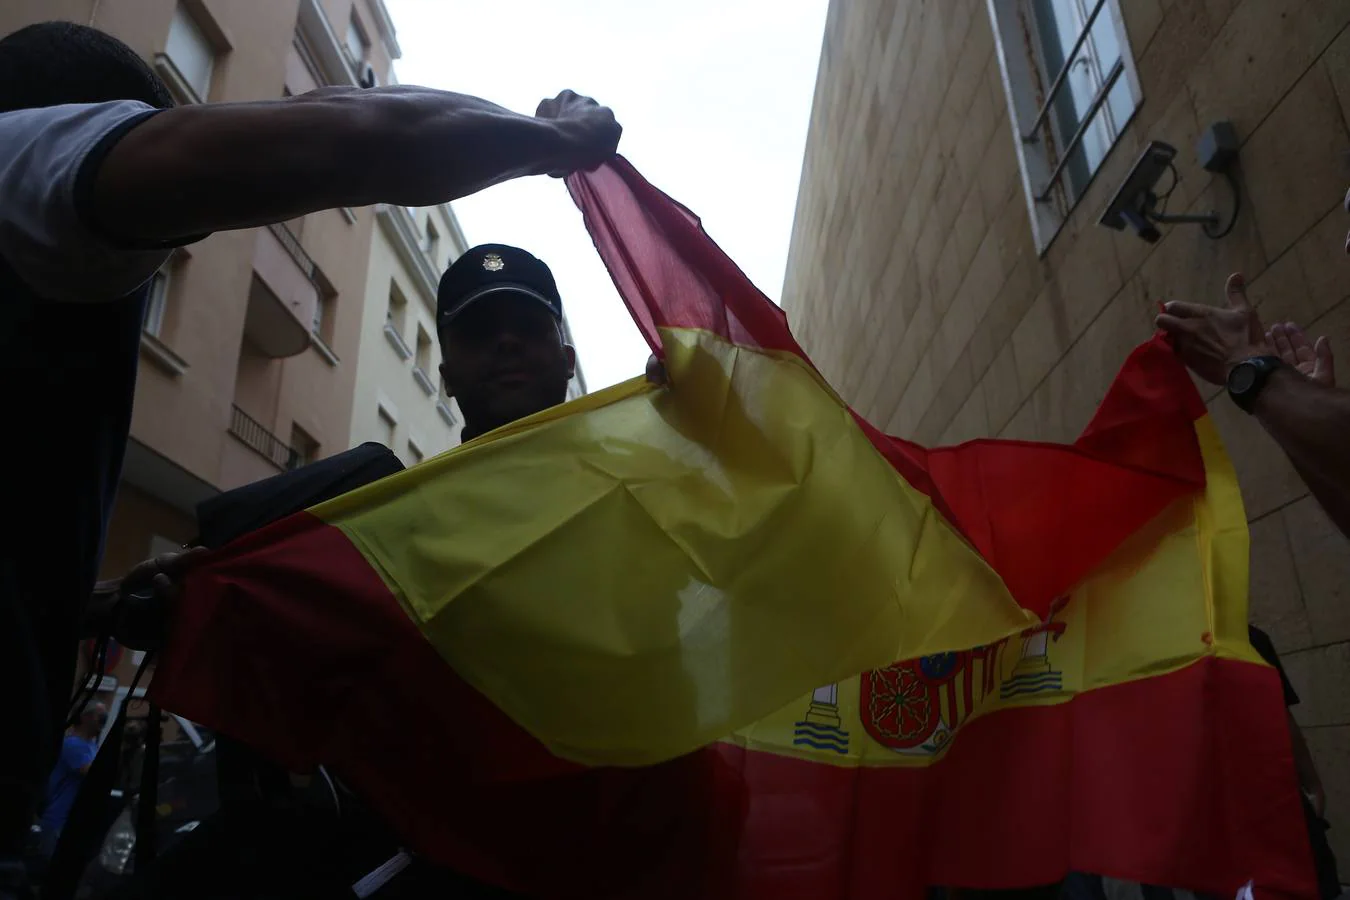 La Policía de Cádiz, despedida a lo grande en su partida hacia Cataluña